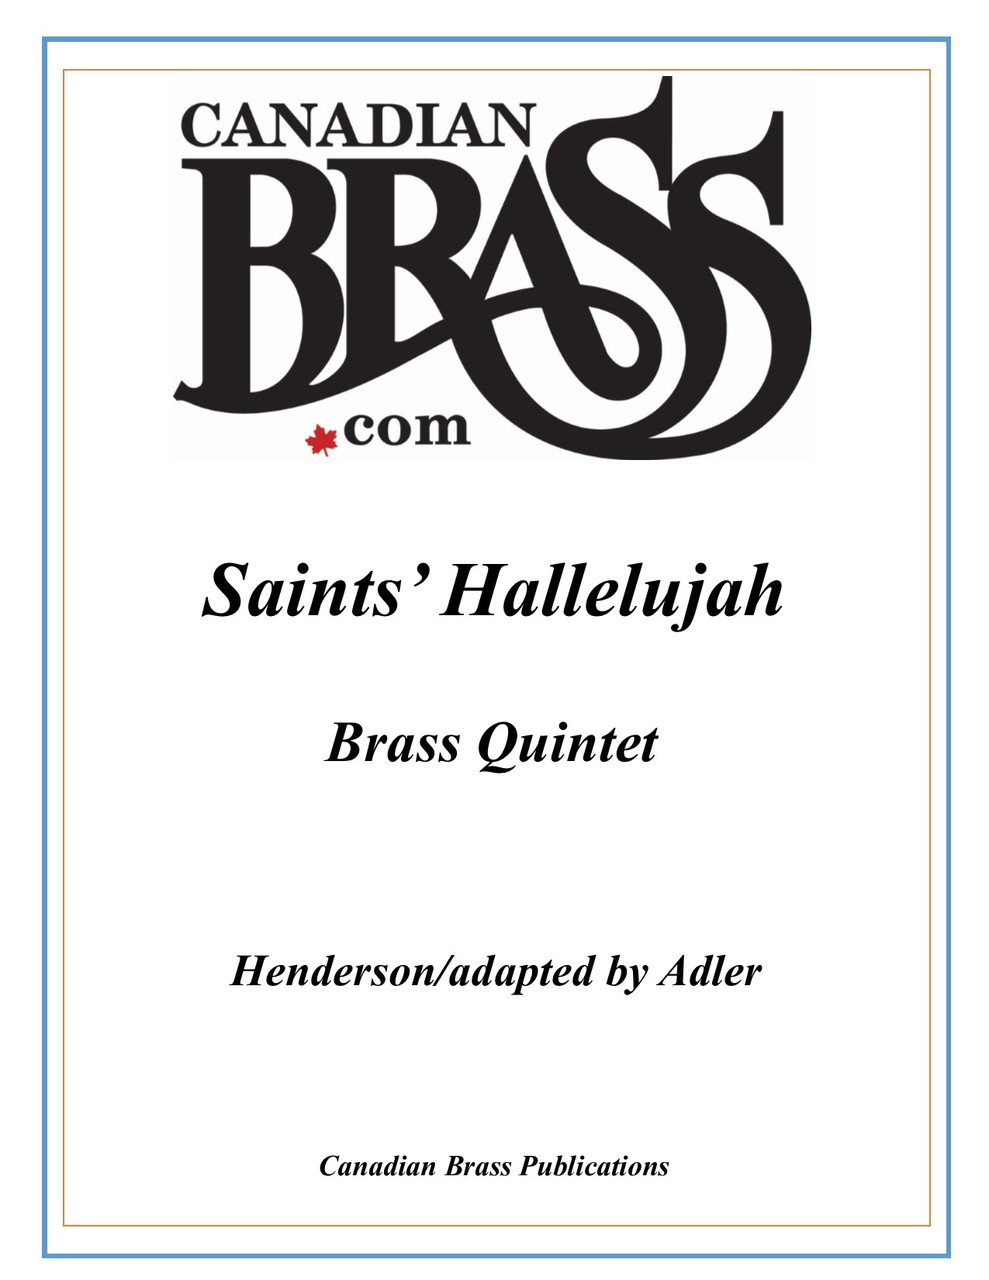 Saints' Hallelujah Brass Quintet (Henderson/Adler)